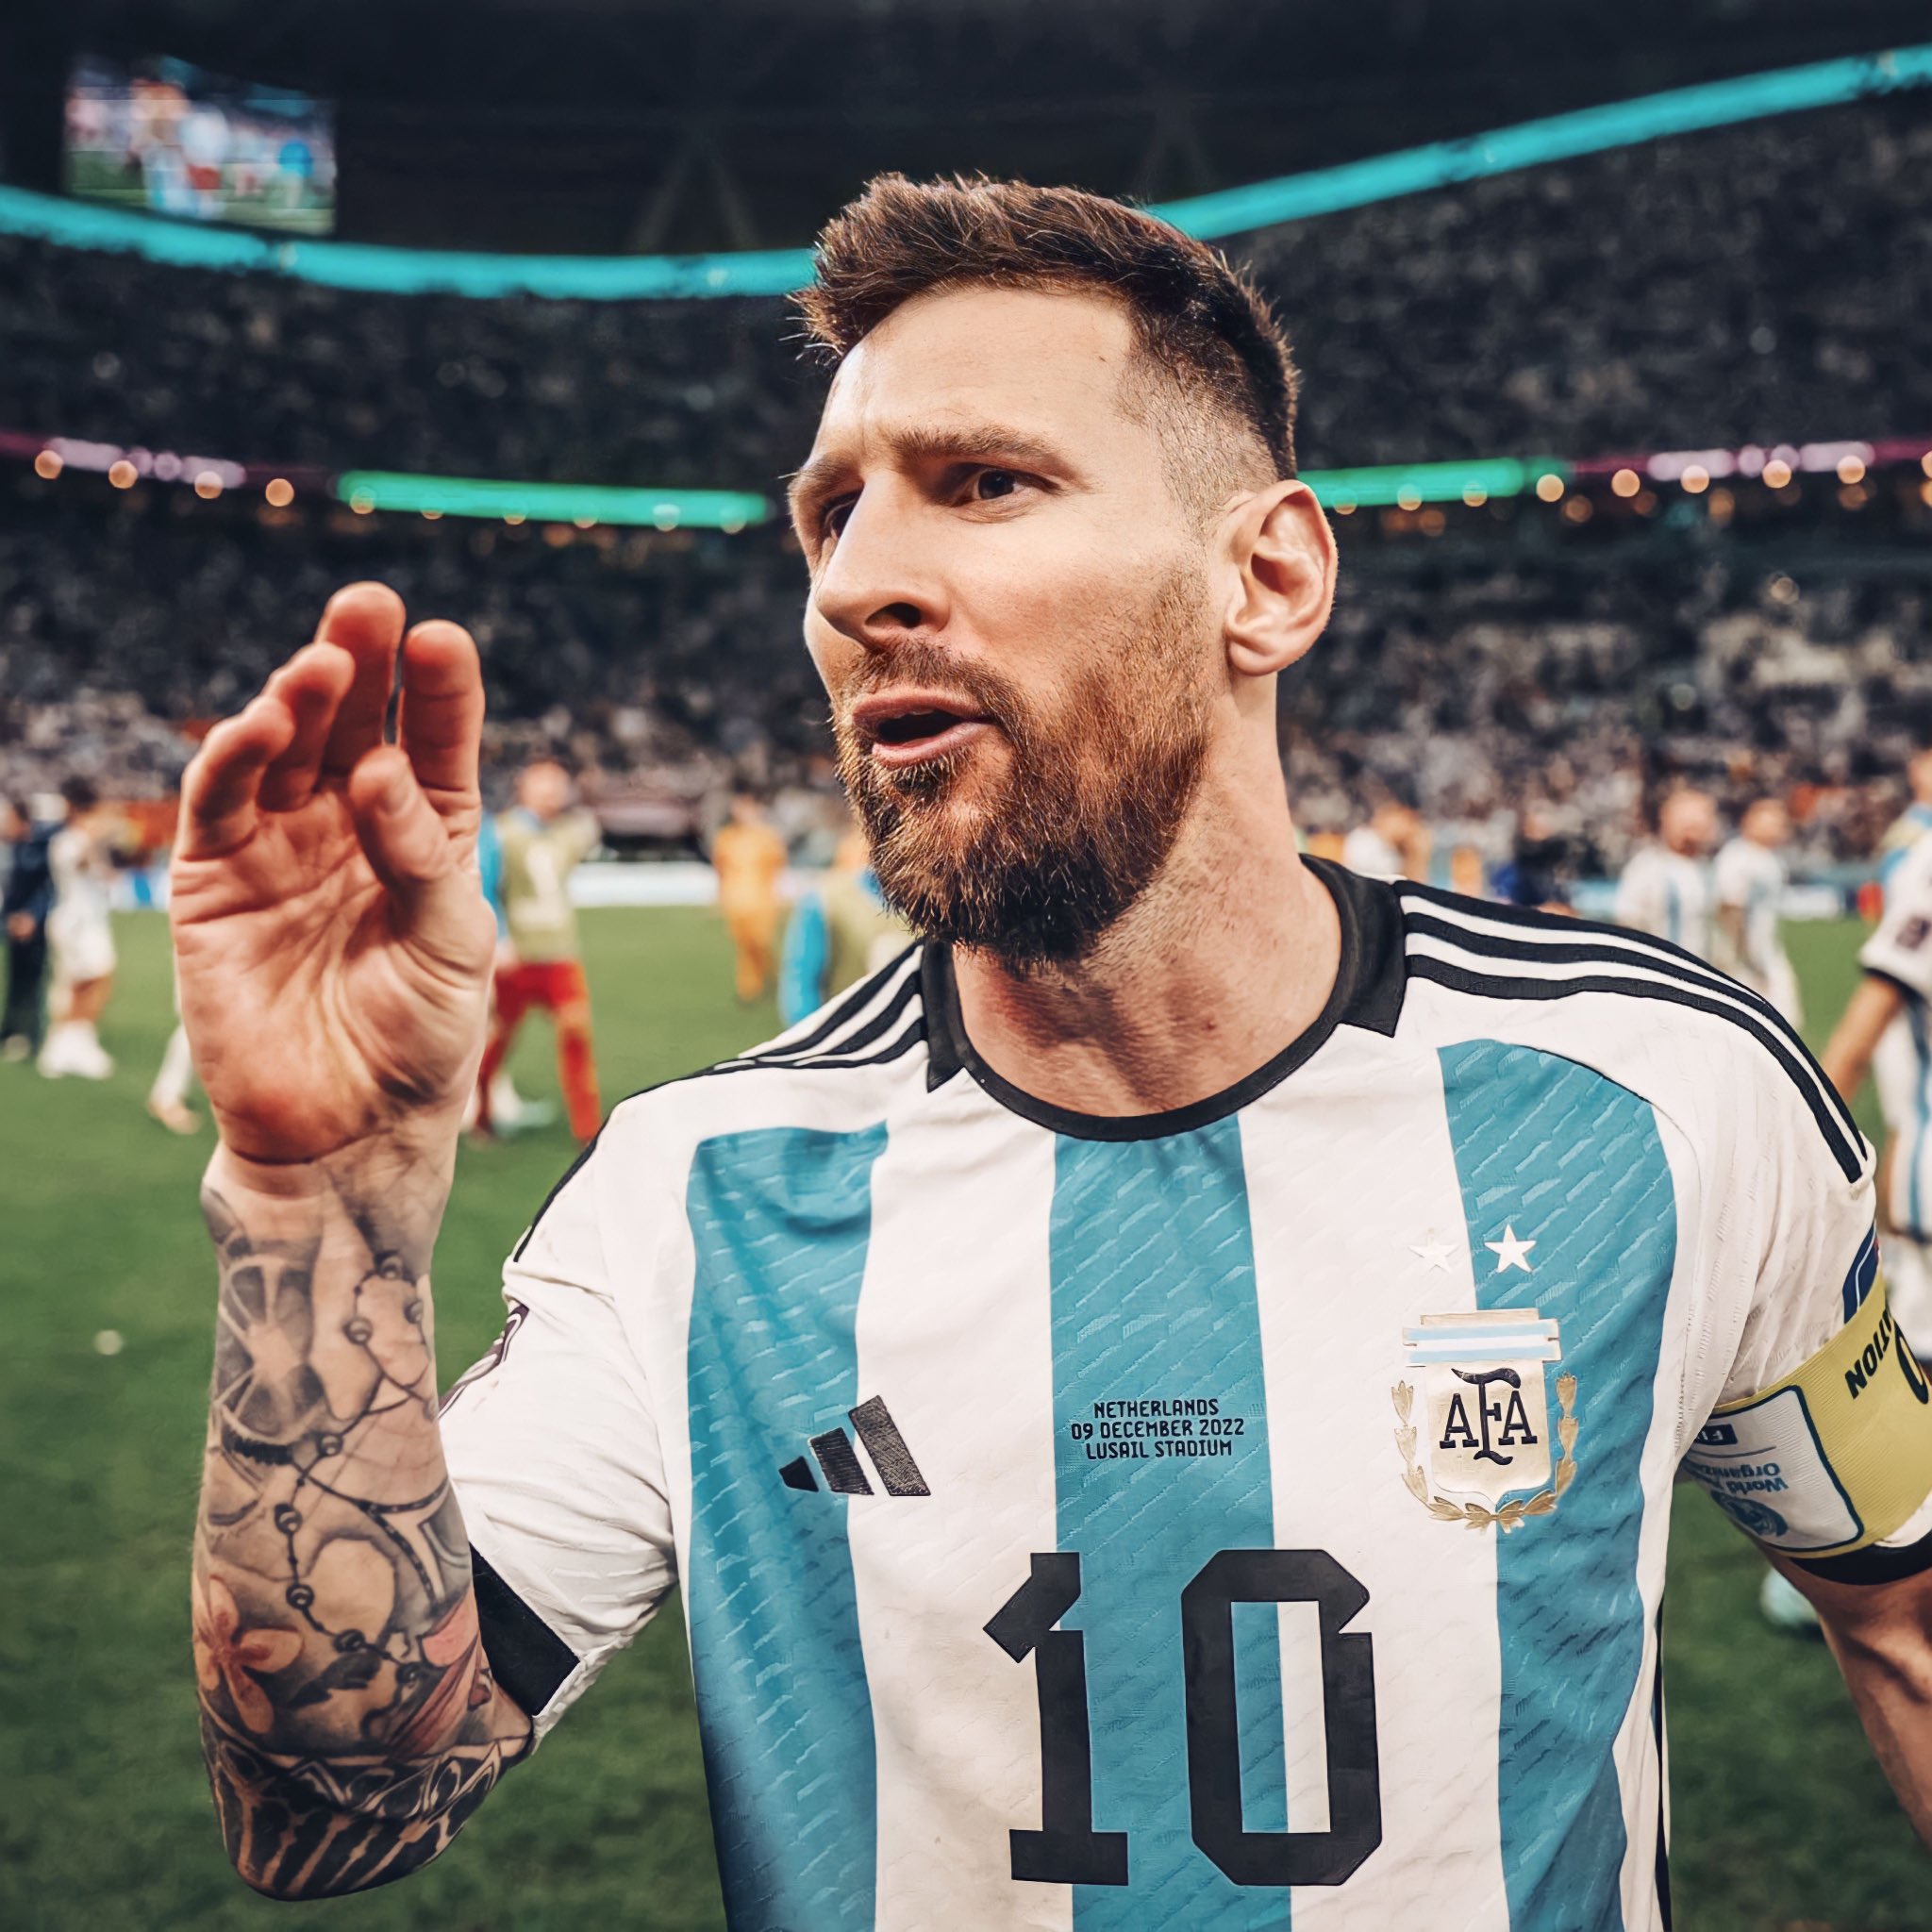 Argentina là nước mạnh trong lĩnh vực bóng đá, họ có đội tuyển tài năng và nổi tiếng toàn thế giới. Những hình ảnh về Argentina sẽ khiến bạn cảm thấy tự hào về đất nước và niềm đam mê bóng đá của mình.